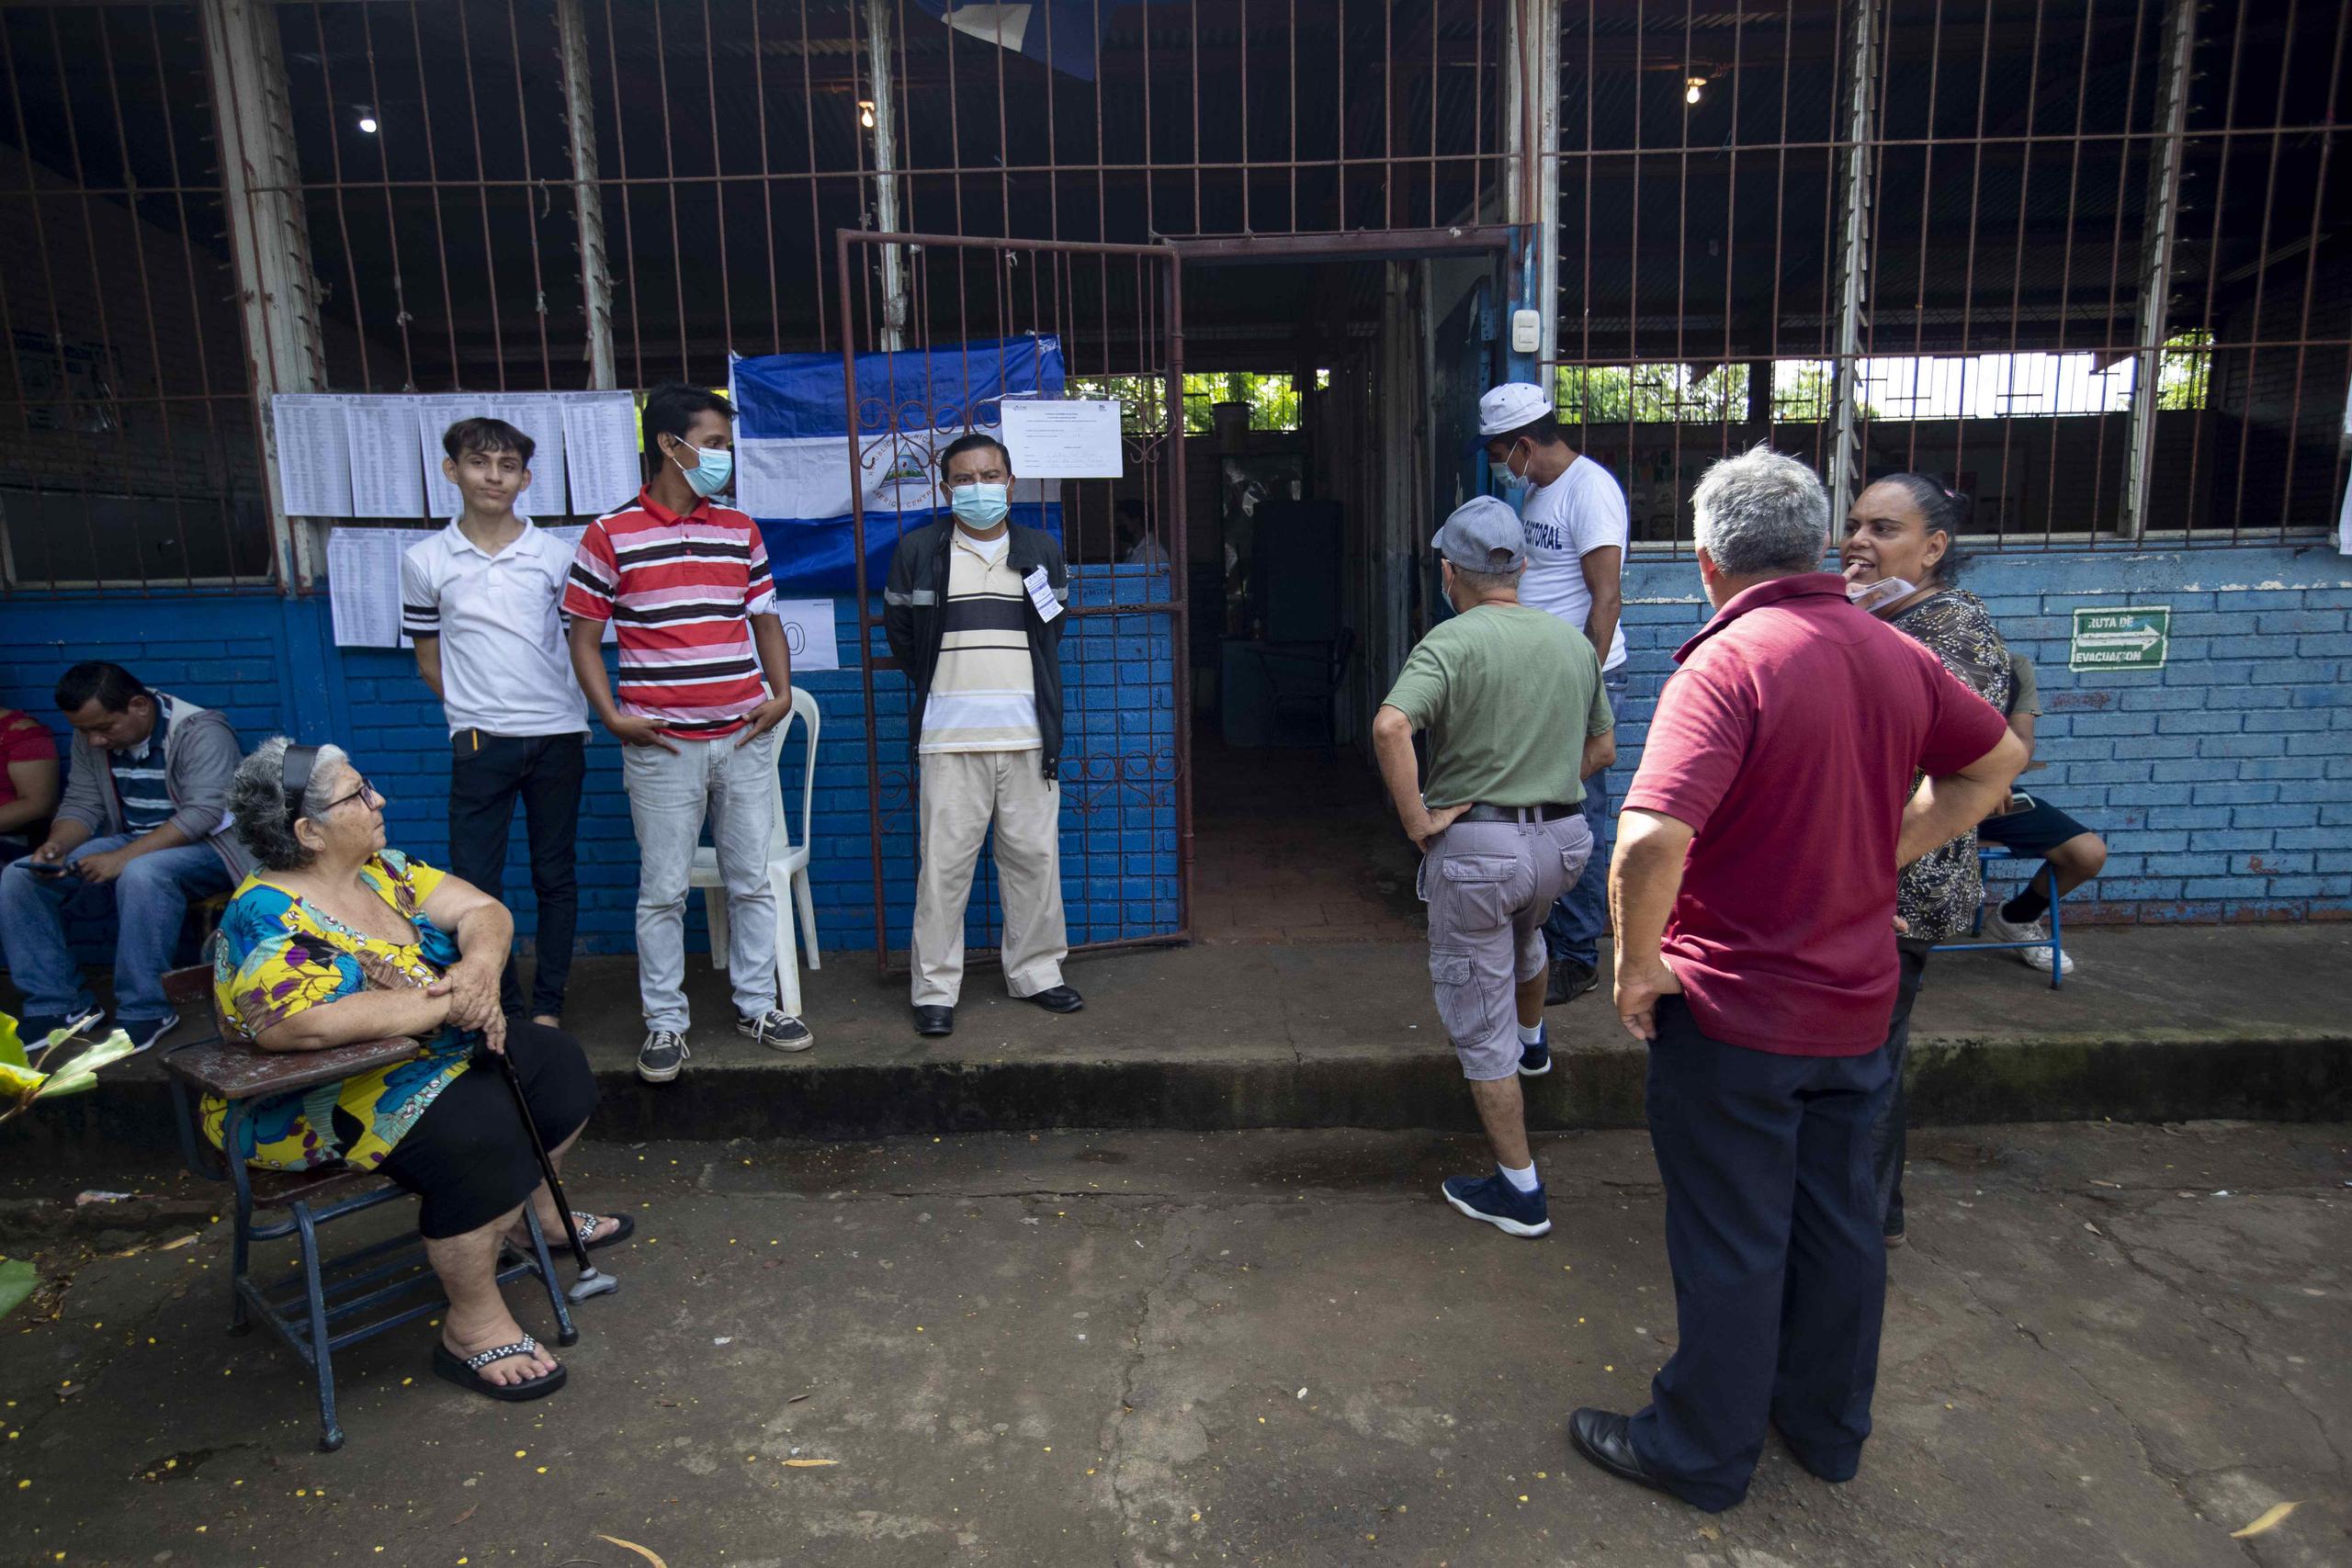 Un grupo de personas al esperar afuera de una junta receptora de votos (JRV), durante las elecciones municipales nicaragüenses, en Managua, en Nicaragua. (EFE/Jorge Torres)